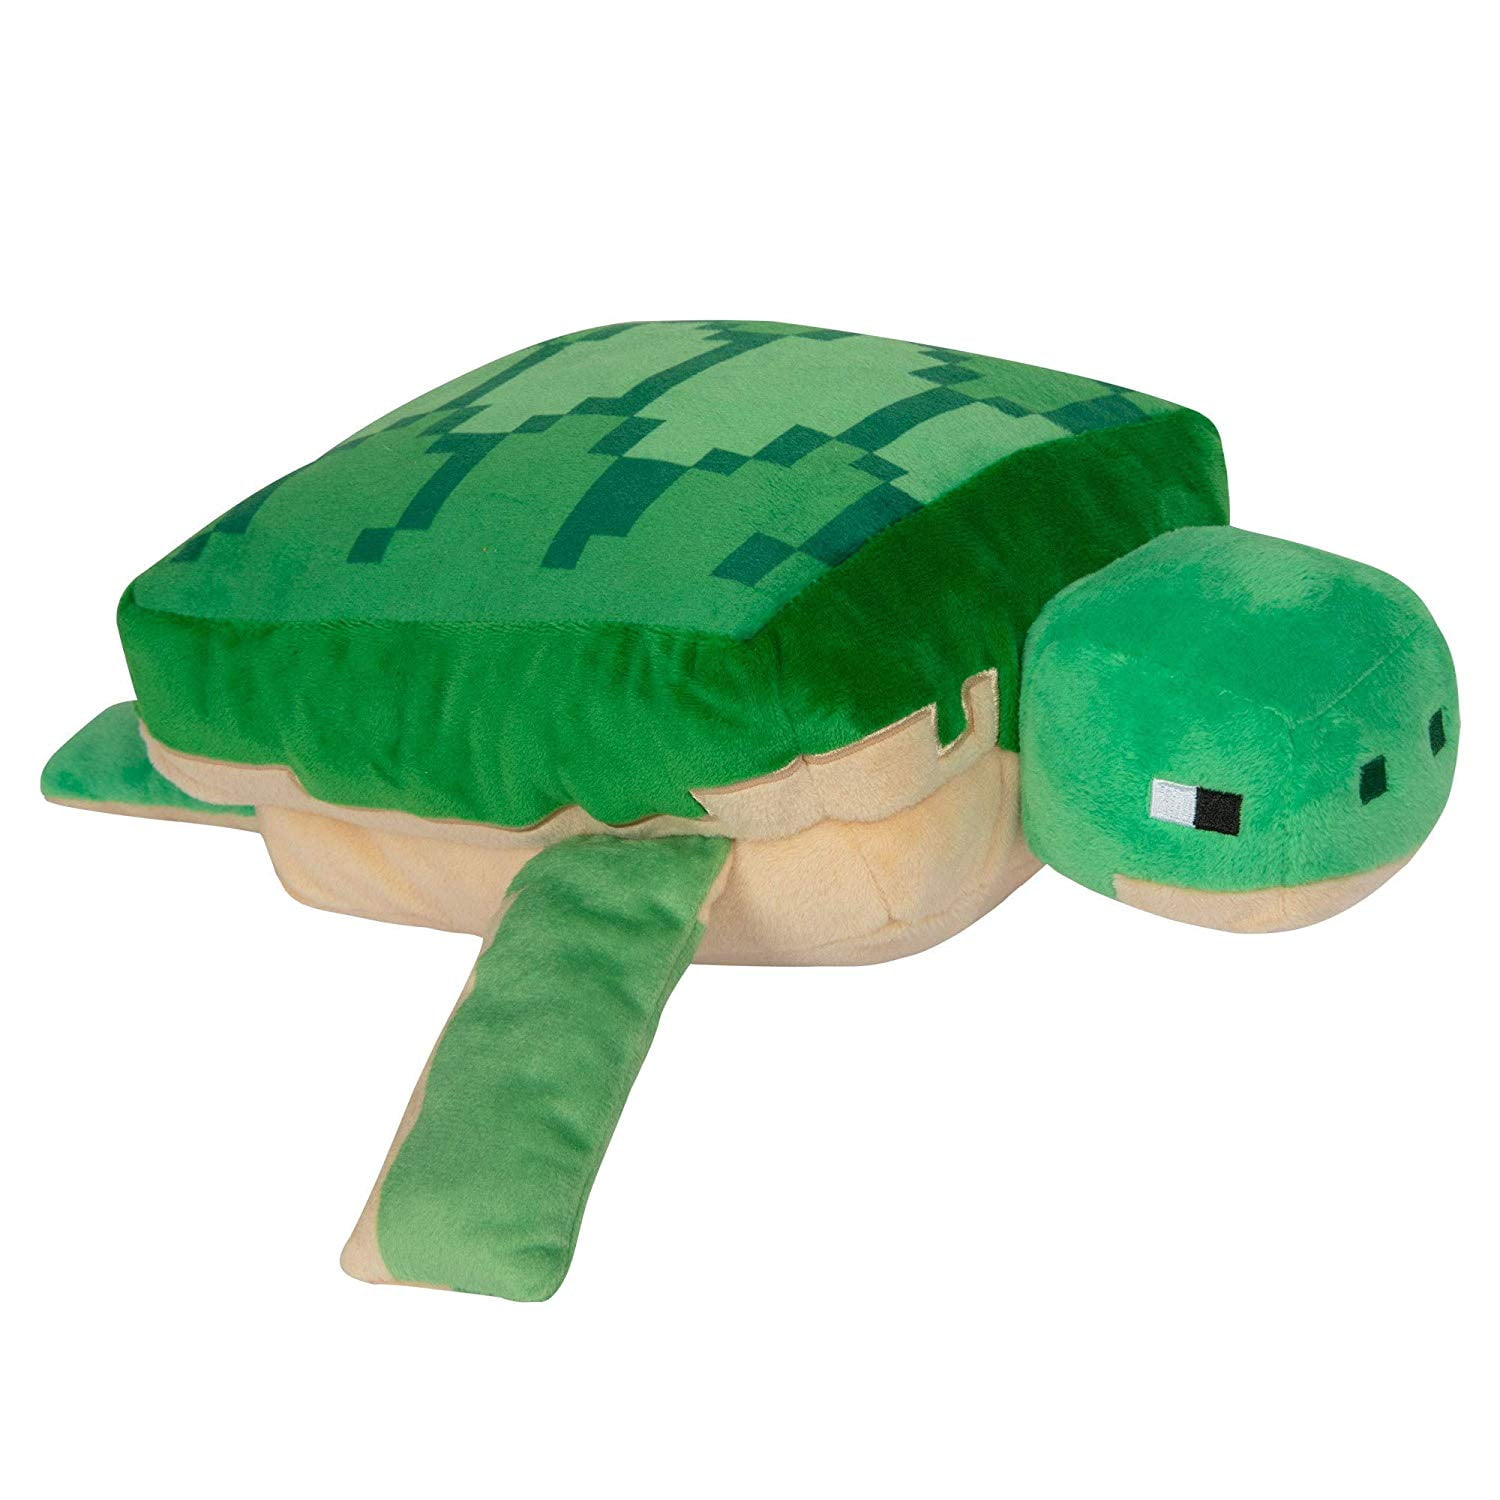 turtle stuffed animal walmart